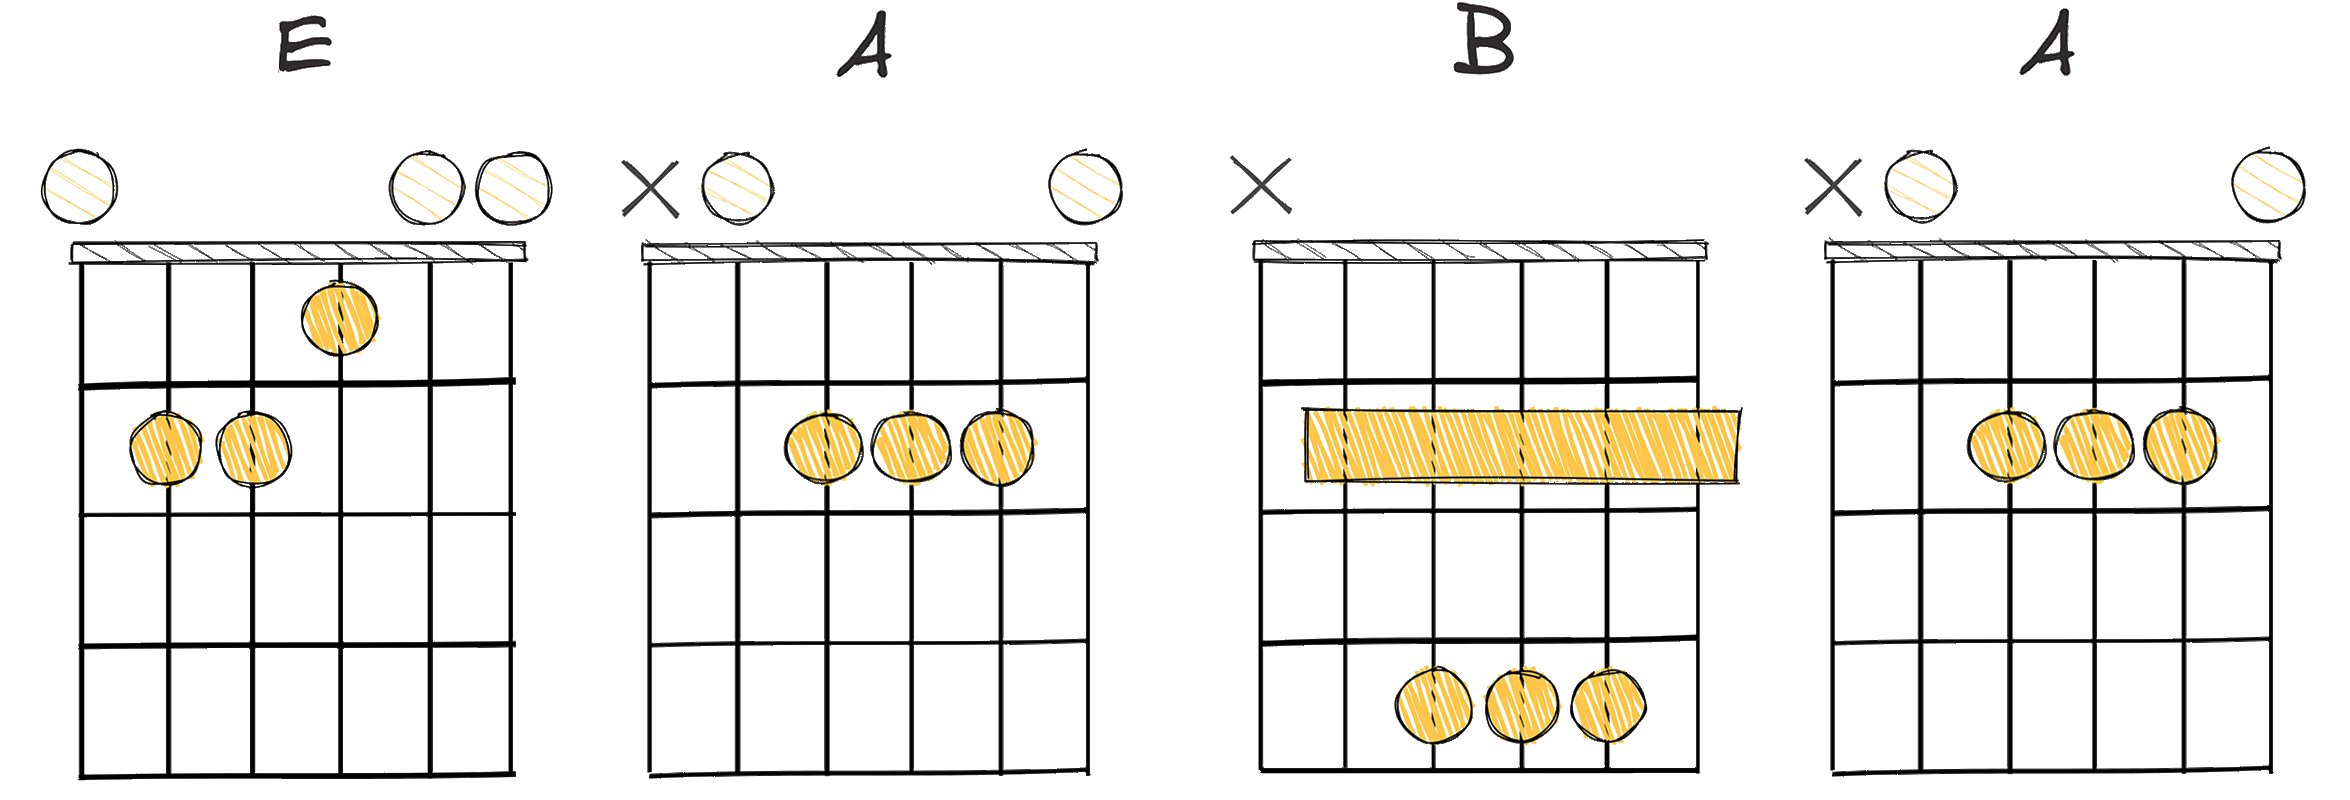 I-IV-V-IV (1-4-5-4) chords diagram